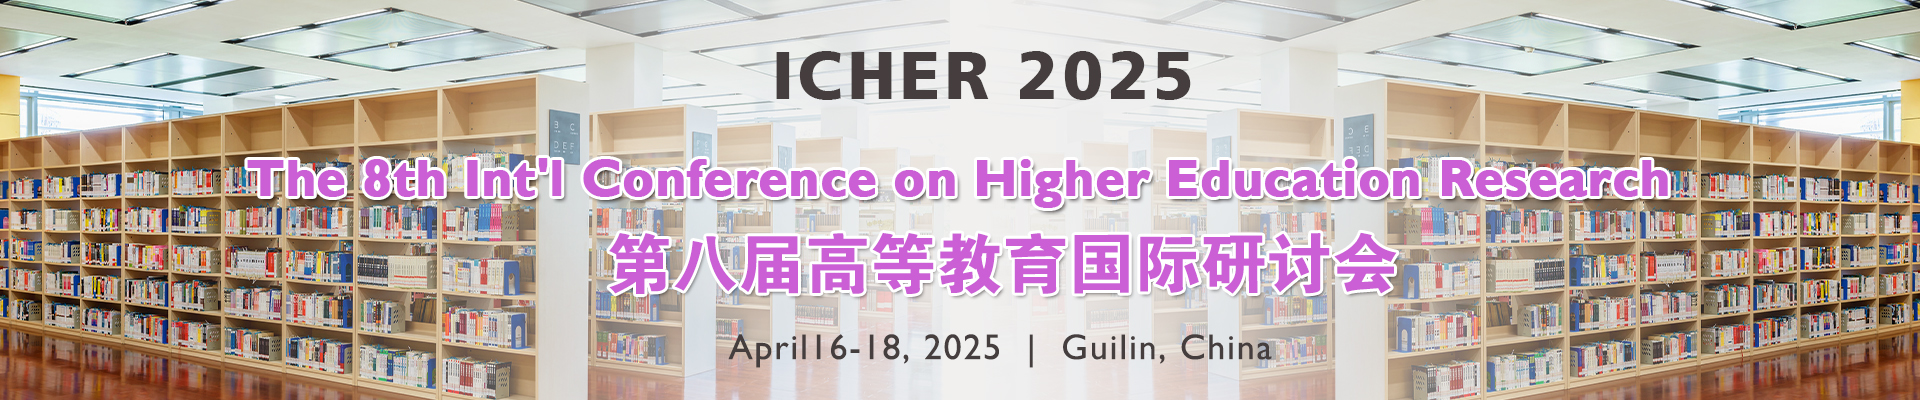 第八届高等教育国际研讨会 (ICHER 2025)